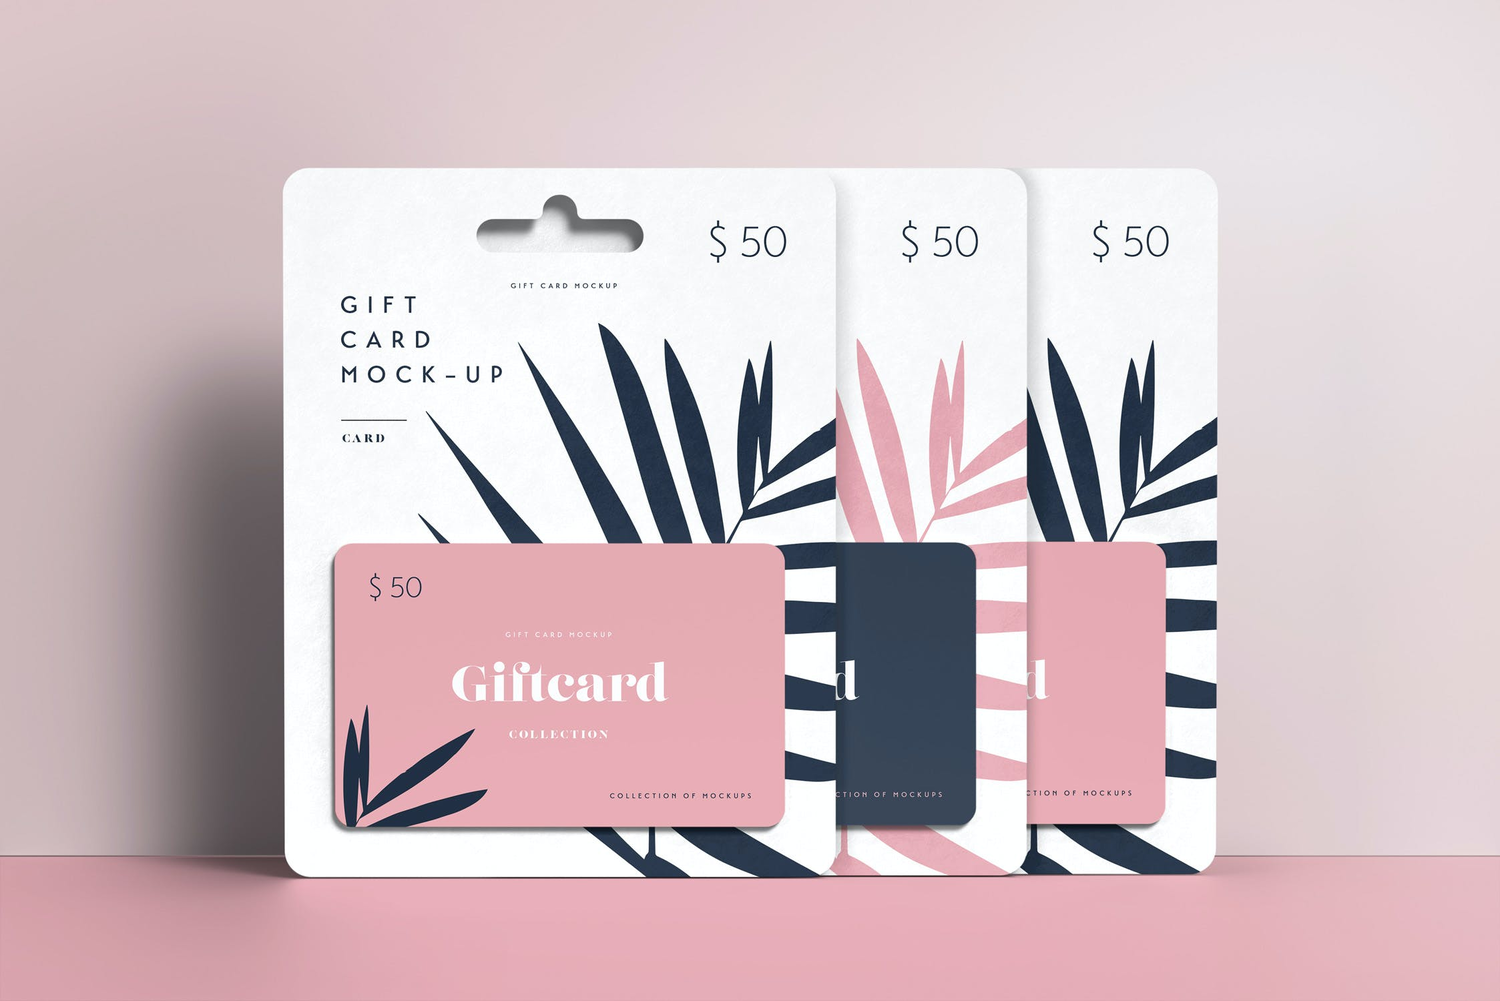 4767 悬挂式礼品卡购物消费磁卡设计贴图ps样机素材多角度展示效果模板 Gift Card Mock-up@GOOODME.COM